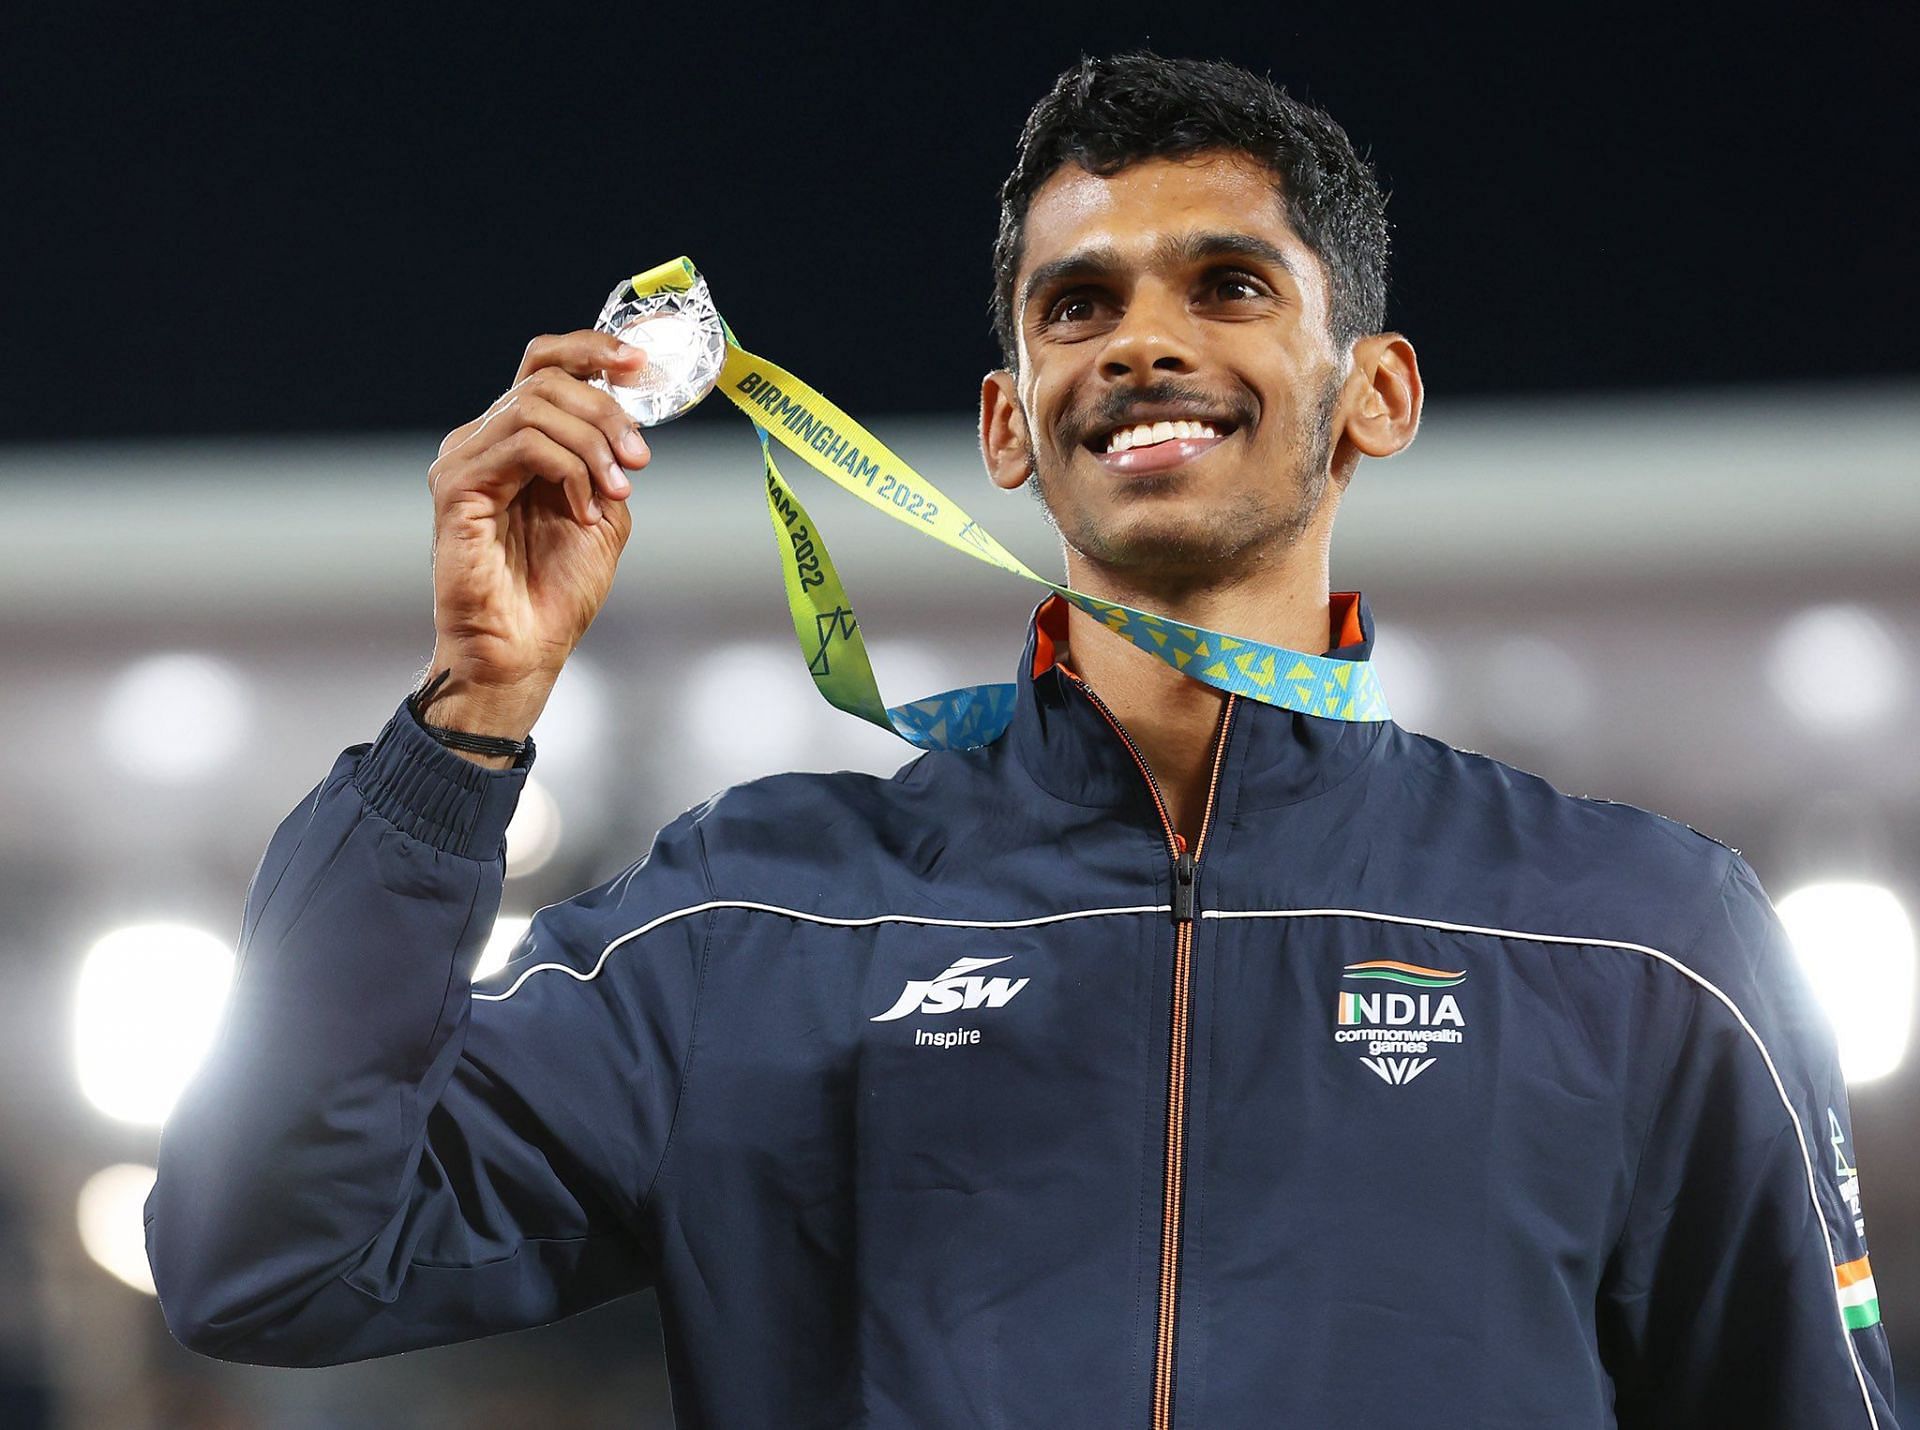 श्रीशंकर ने कॉमनवेल्थ खेलों में पुरुष लॉन्ग जम्प का सिल्वर मेडल जीता है।